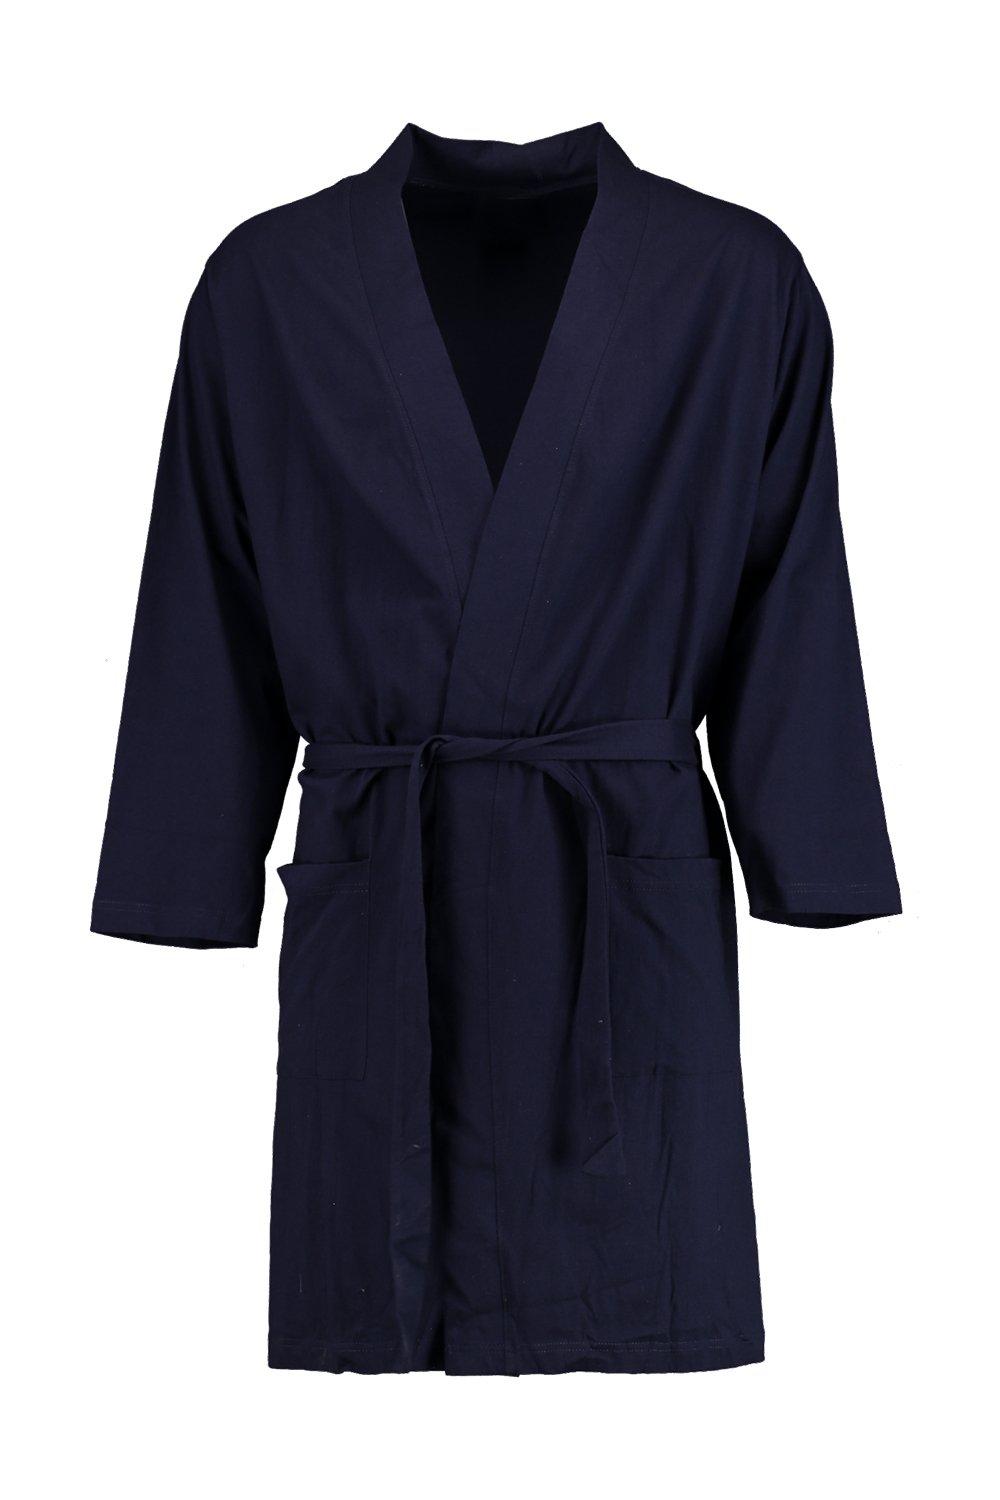 Boohoo Mens Kimono Robe | eBay